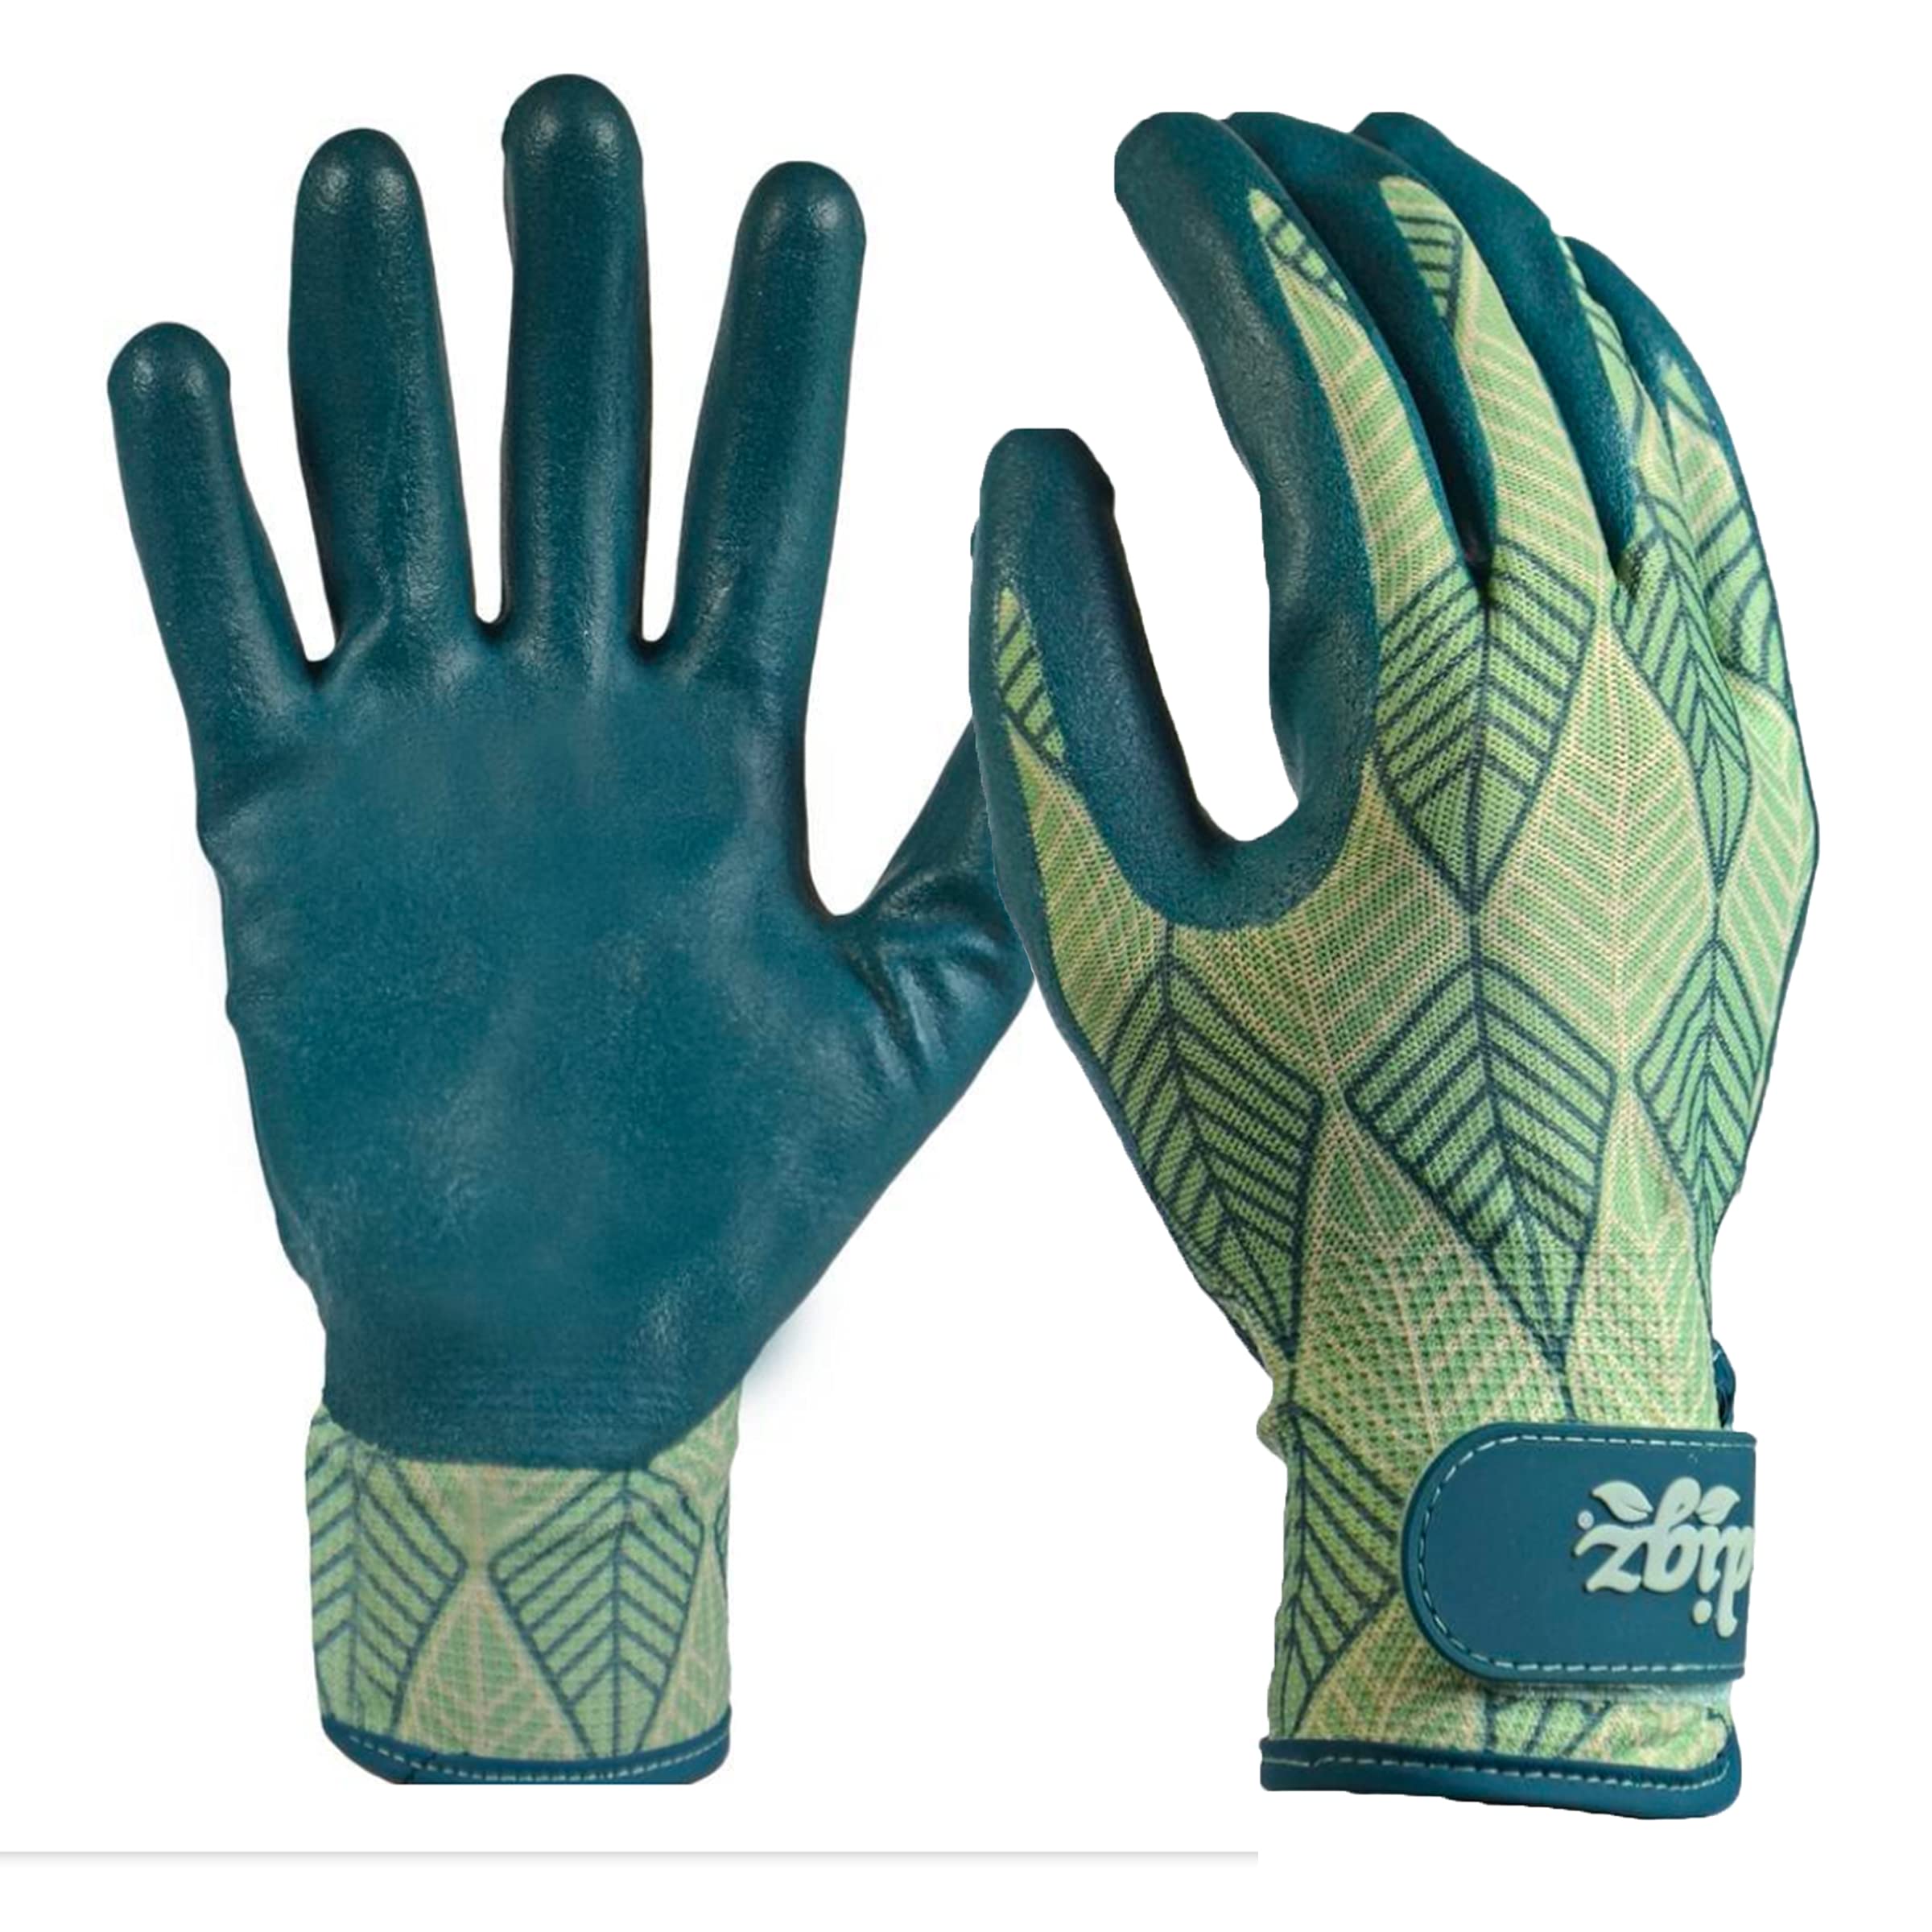 DIGZ Garden Gloves